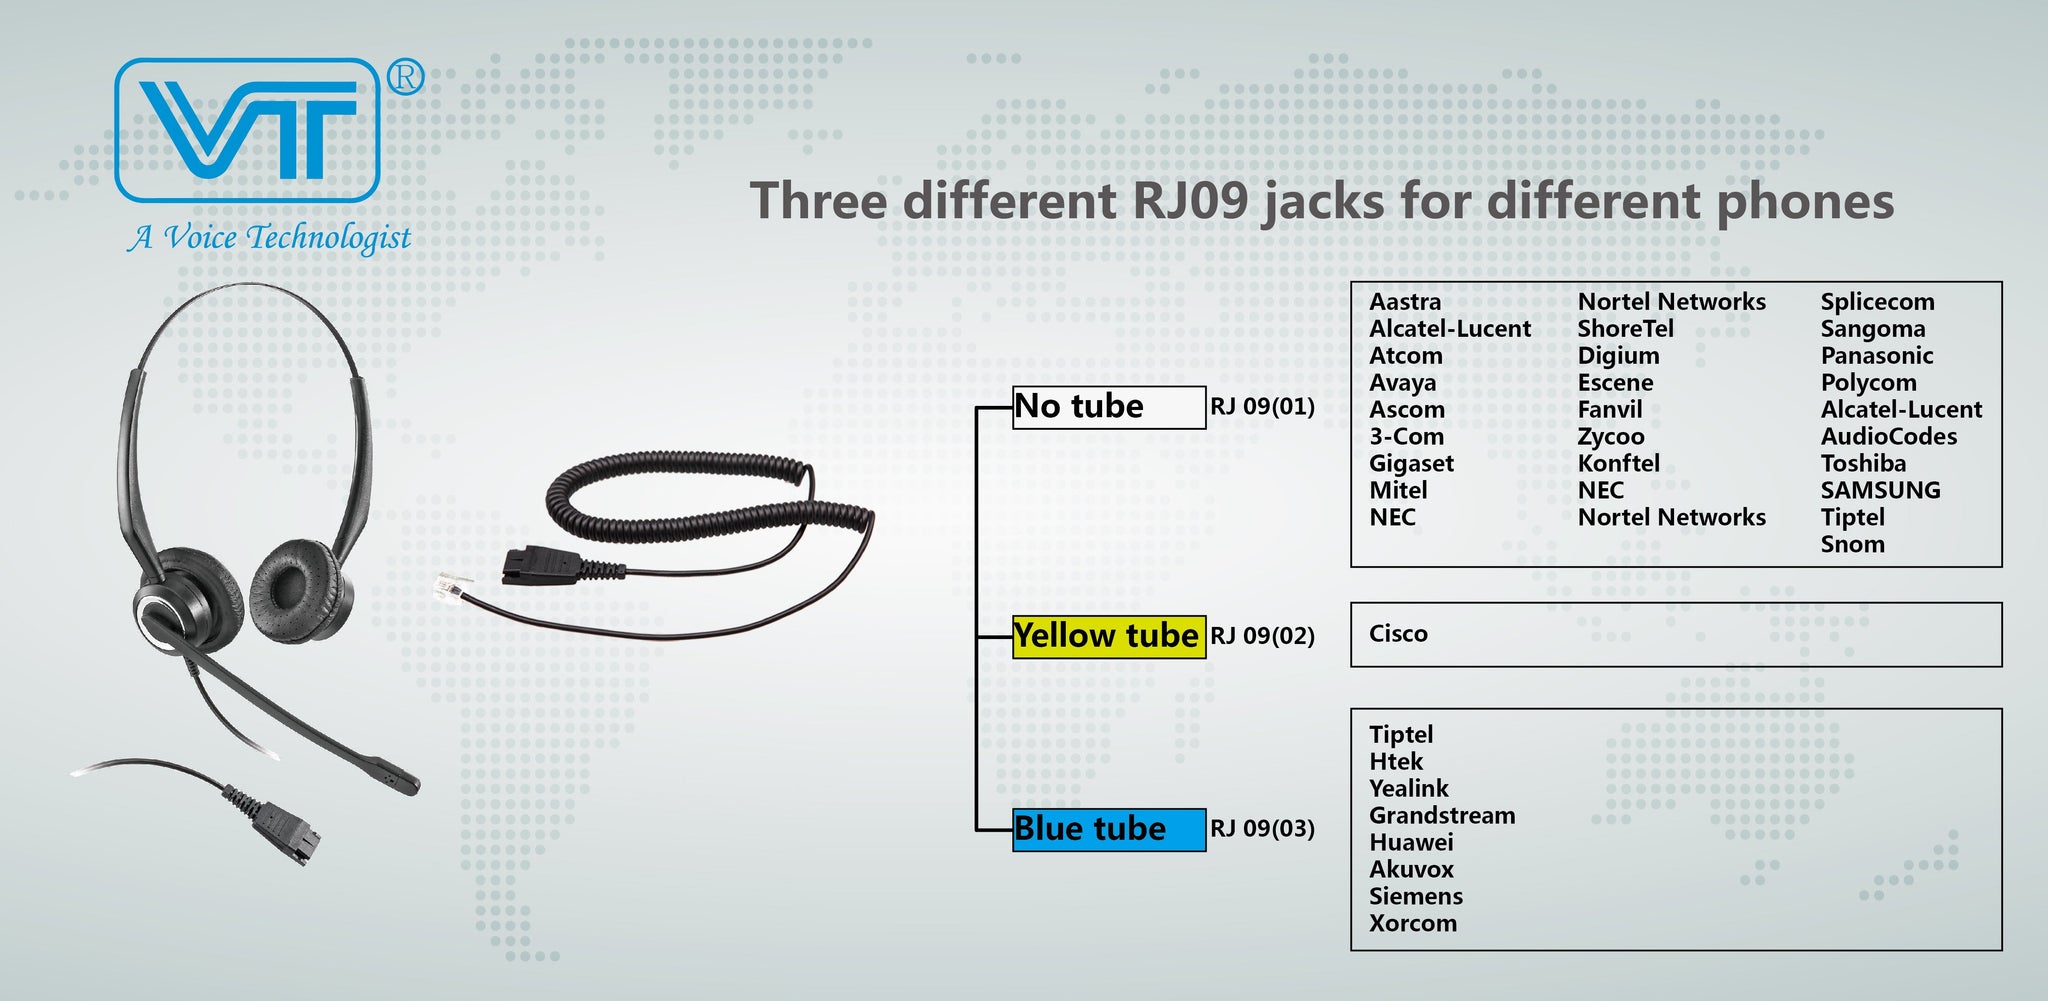 Vt Headset Convertor Qd-Rj09 Plug * Qd-Rj09 Plug - Headsets Accessories